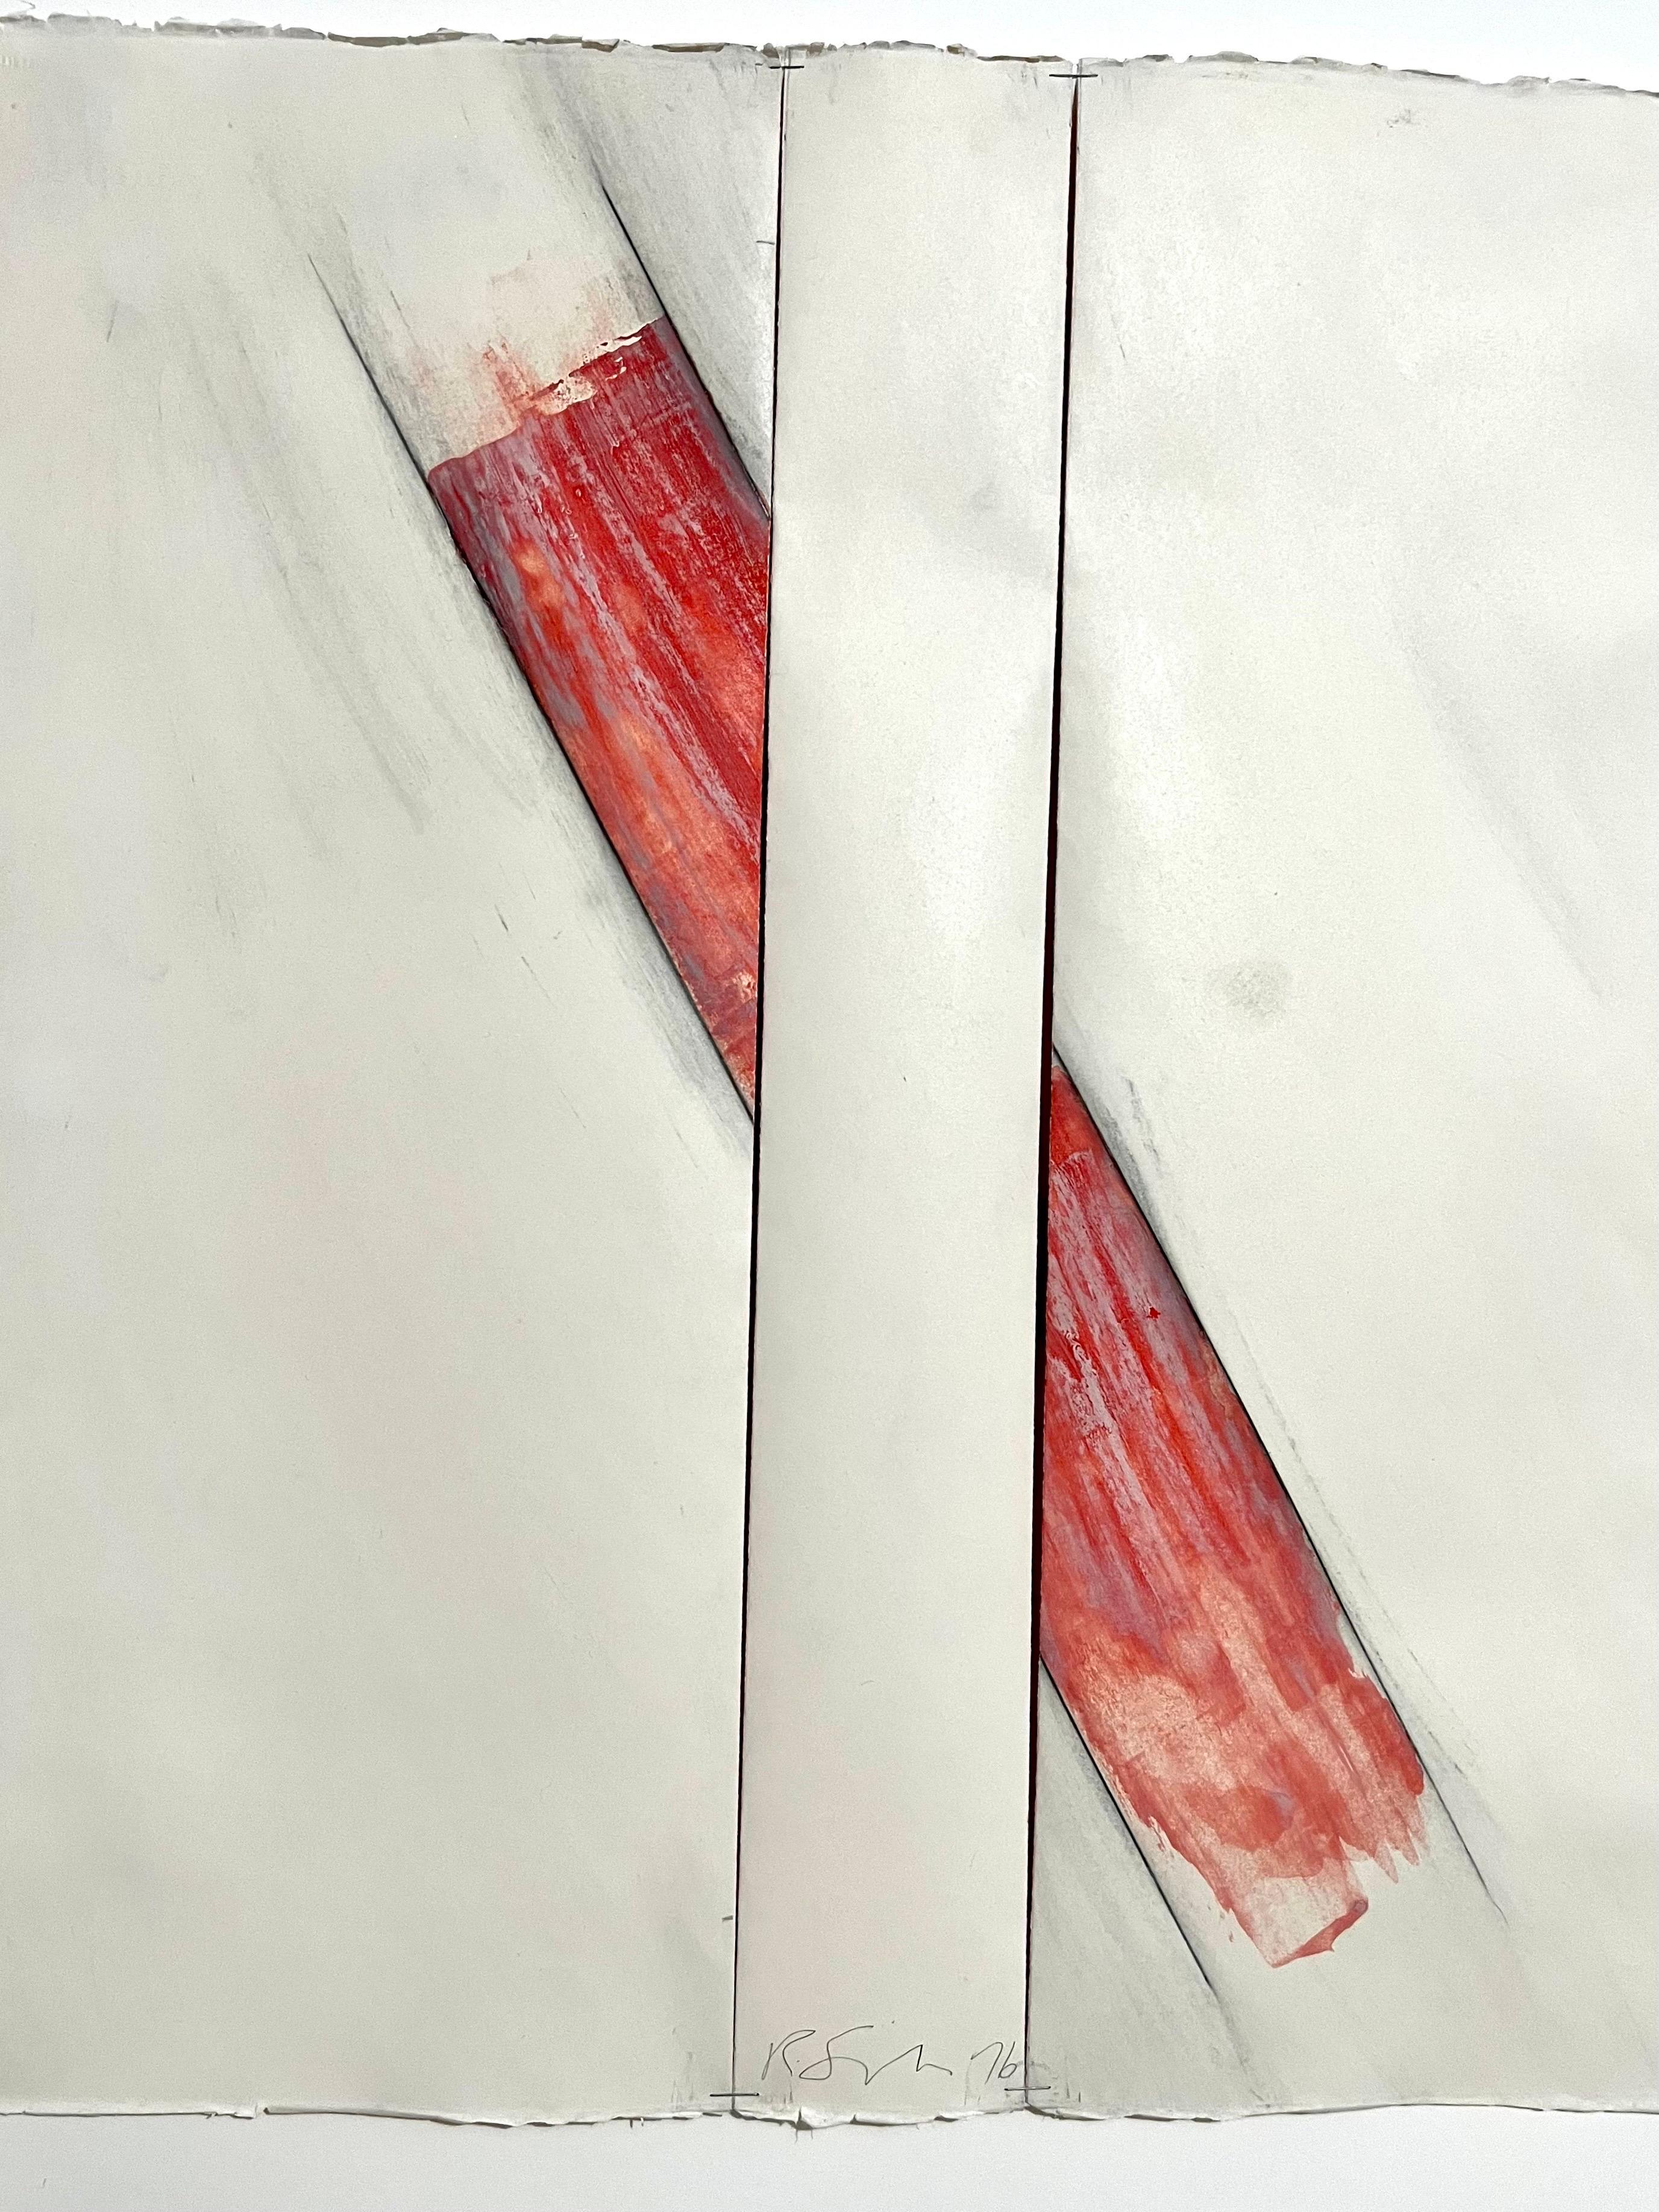 
Richard Smith, britannique (1931-2016)
Sans titre (composition abstraite) (1976)
Gouache, crayon, fusain et agrafes métalliques sur papier Arches
Signé à la main en bas au centre
feuille : 22 x 22 pouces
dimensions du cadre : 32 3/4 x 31 3/4 x 1